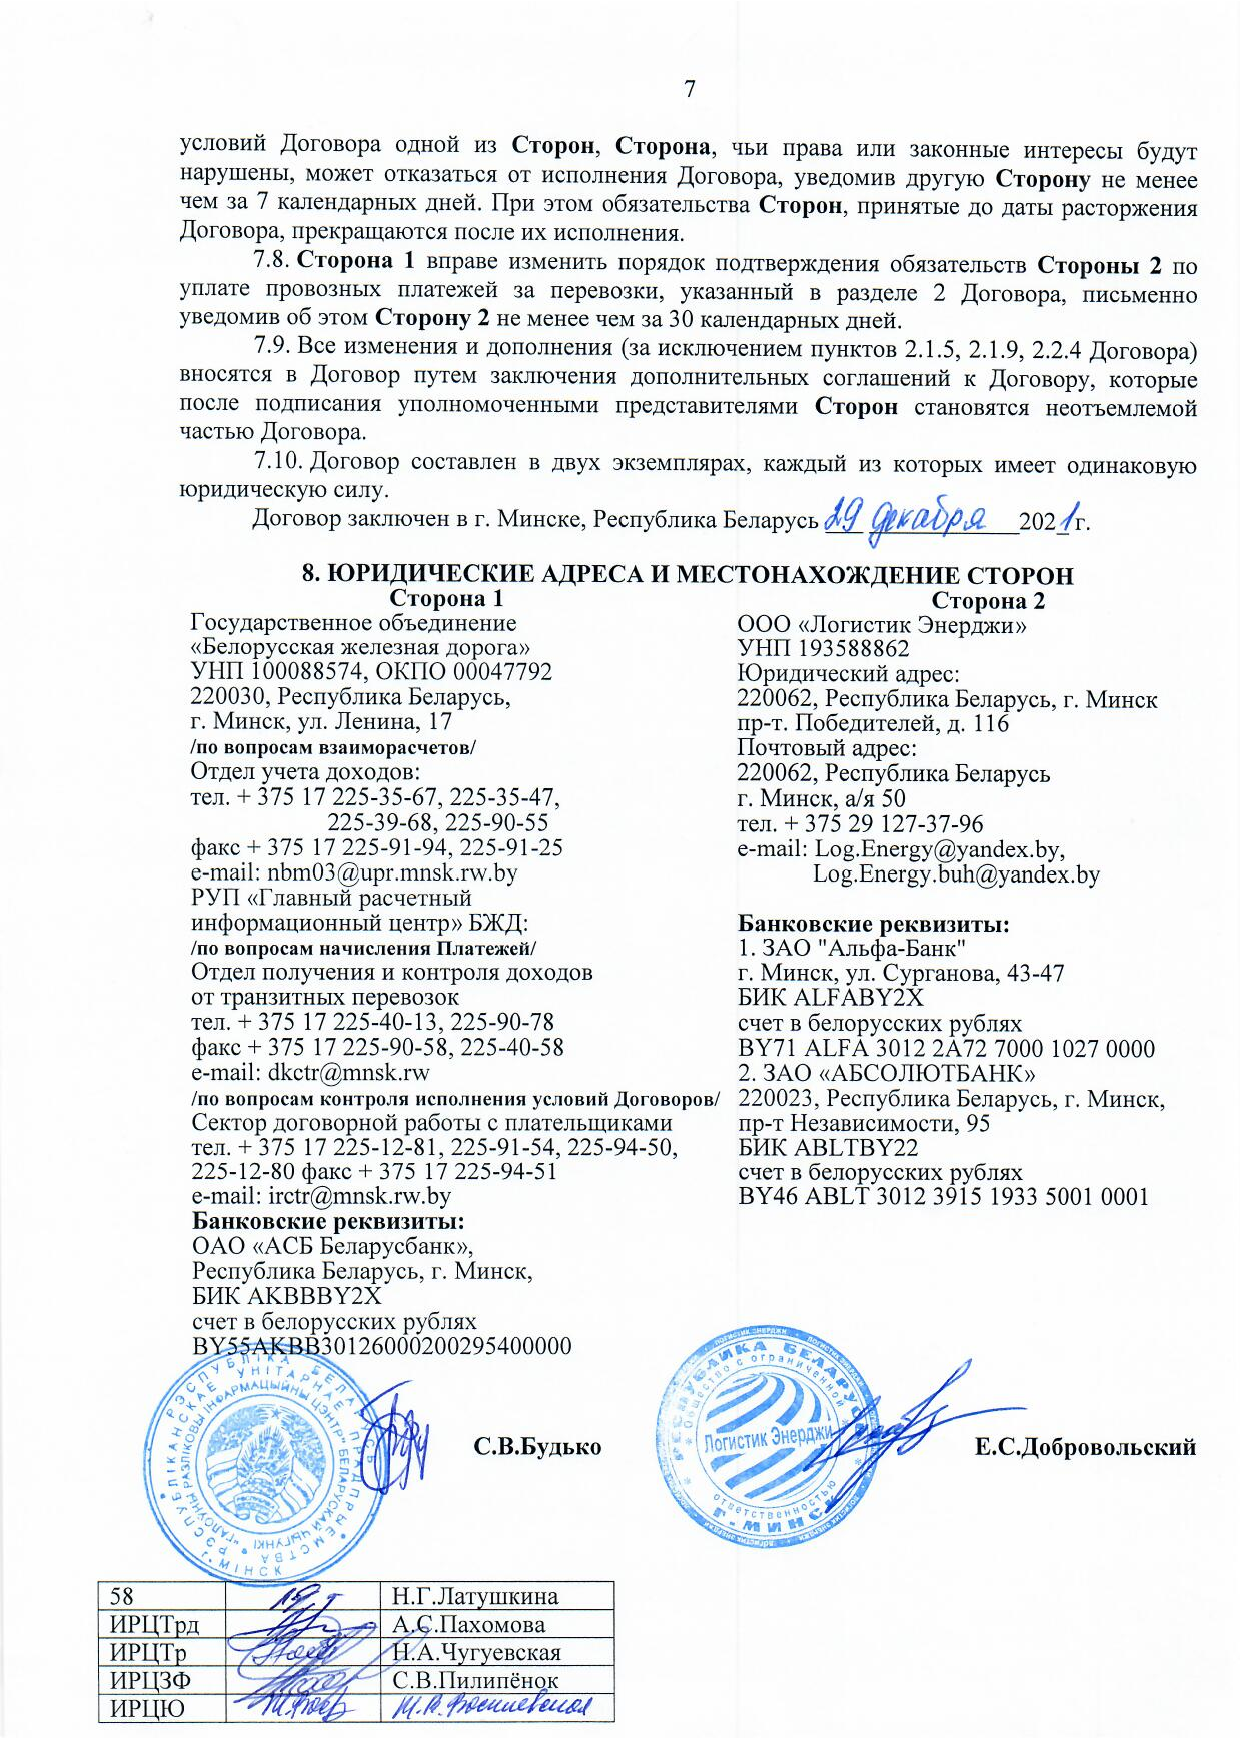 Договор между БЖД и ООО «Логистик Энерджи» от 29.11.2021 № ИРЦ/Ю-710 (Страница 7)